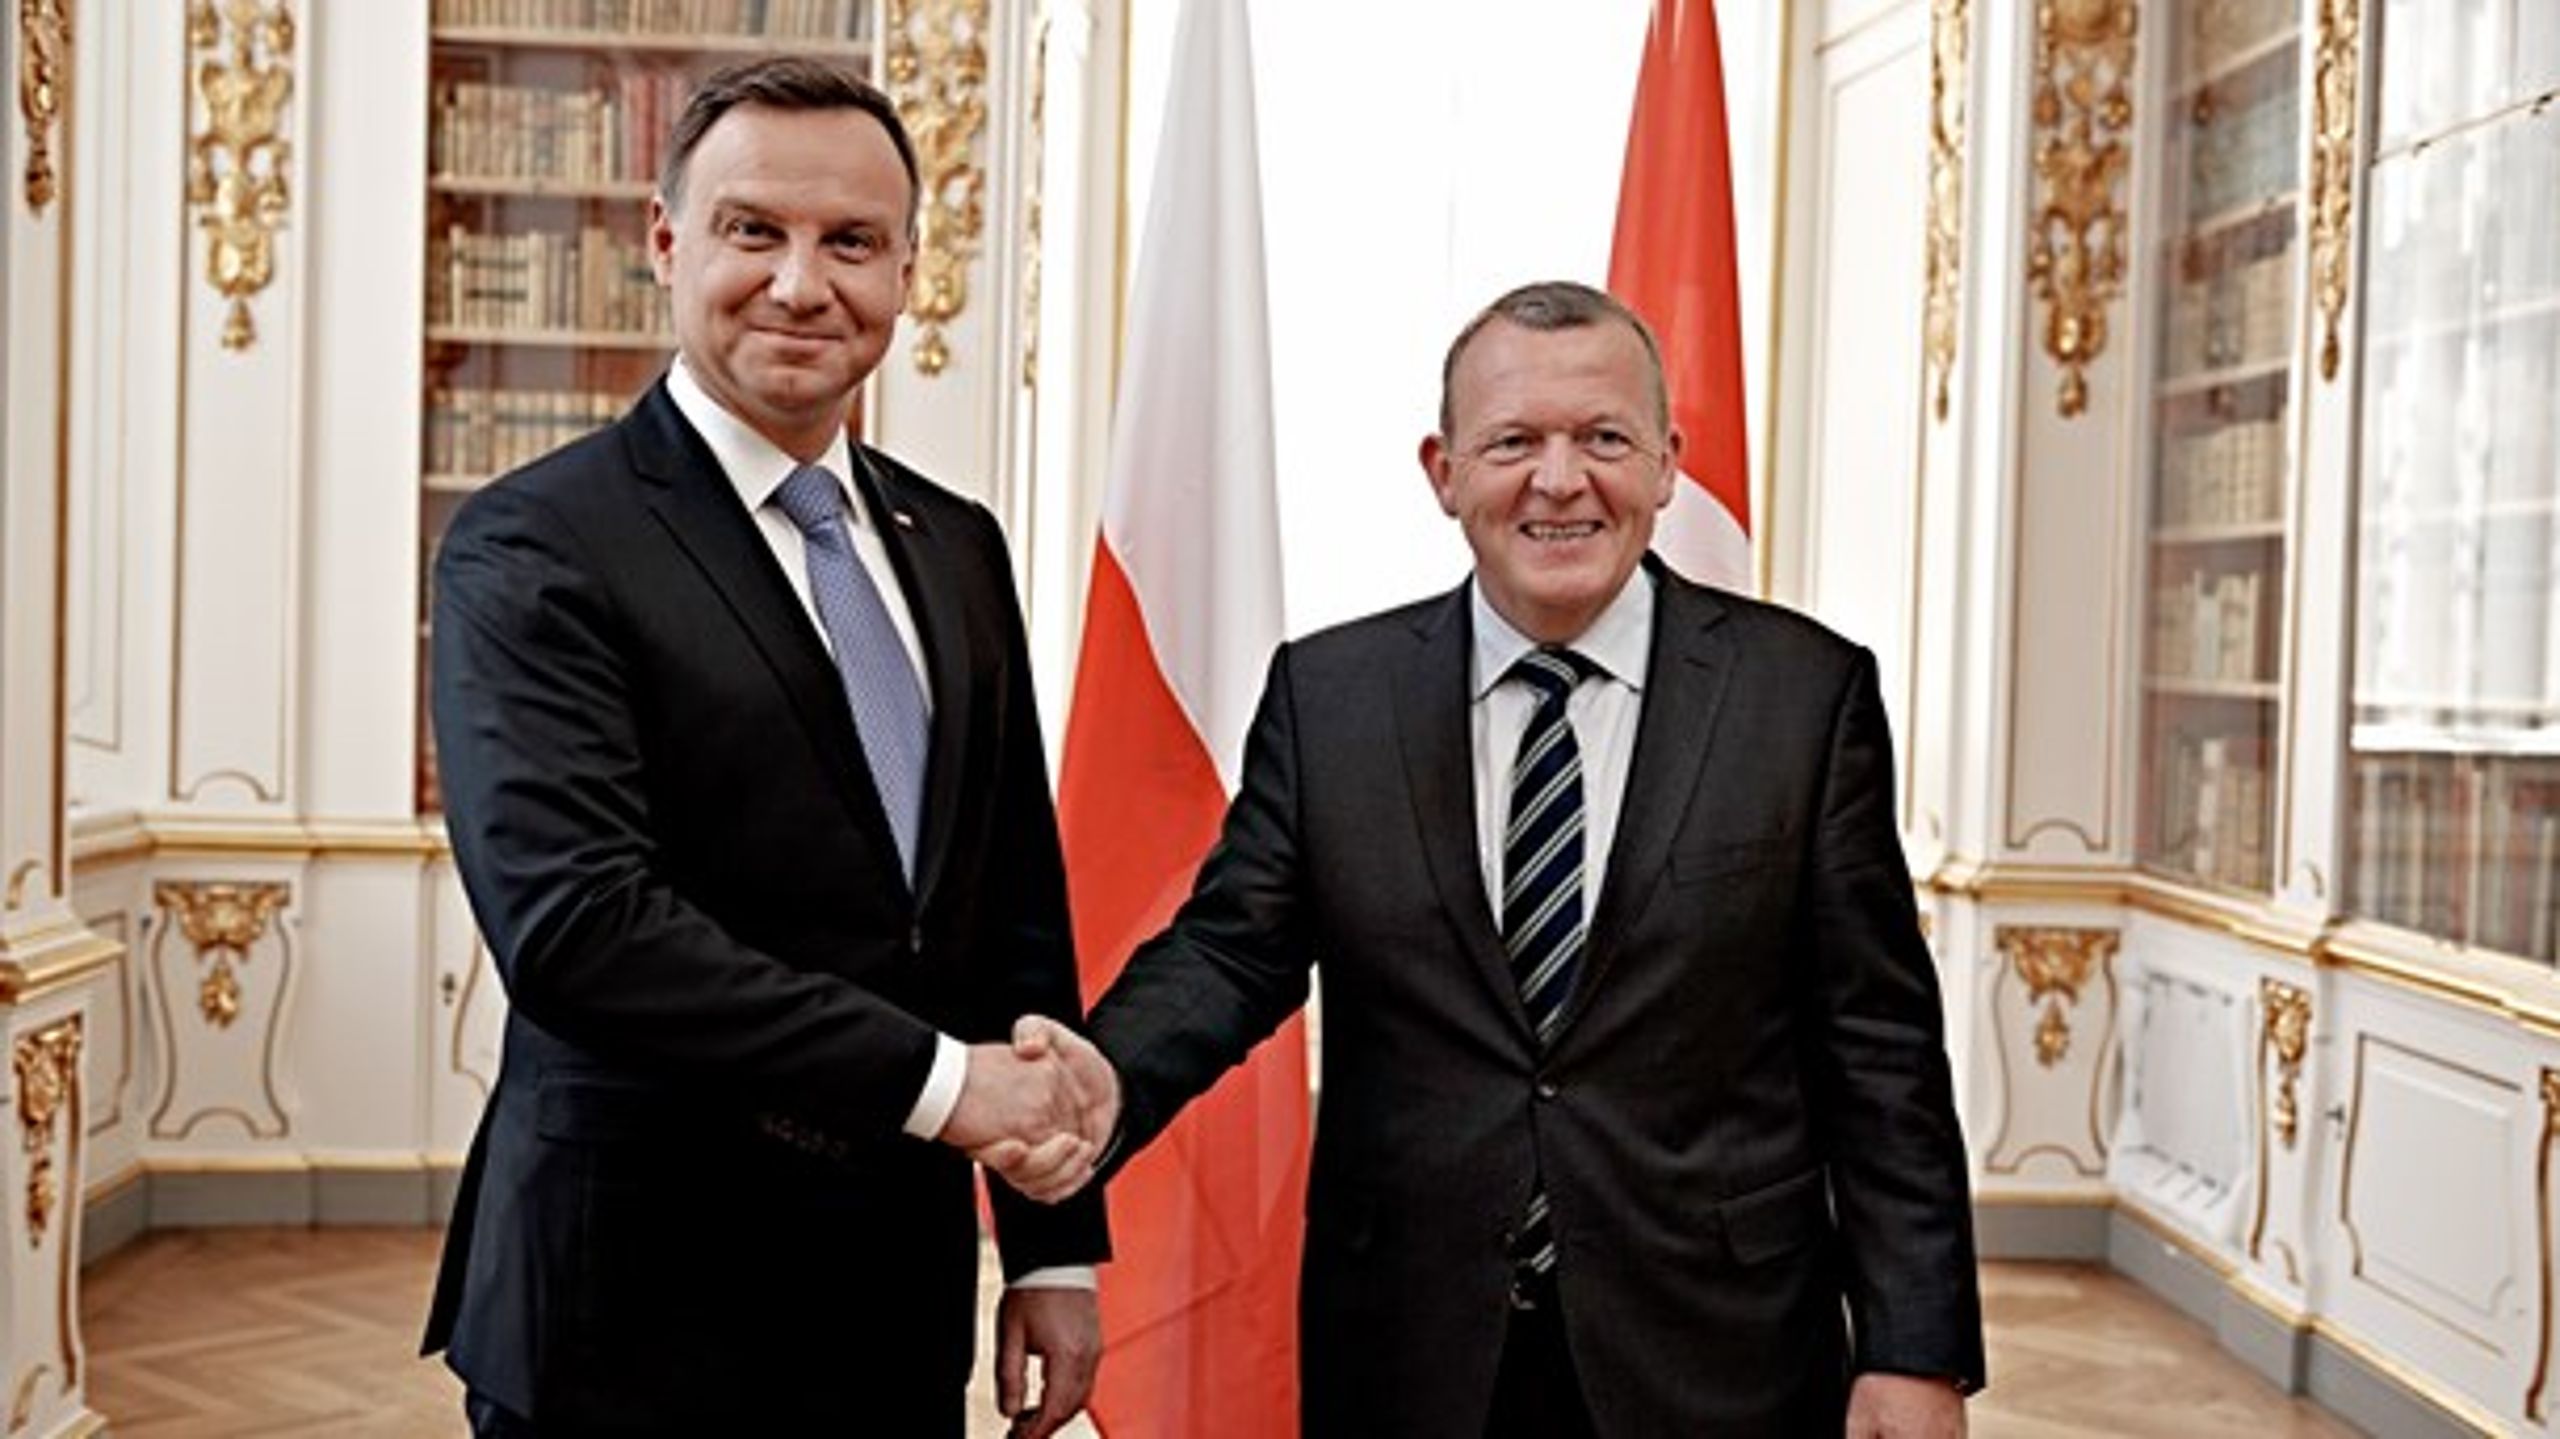 Statsminister Lars Løkke Rasmussen (V) og Polens præsident&nbsp;Andrzej Duda skal blive enige om en ny søgrænse mellem landene.&nbsp;